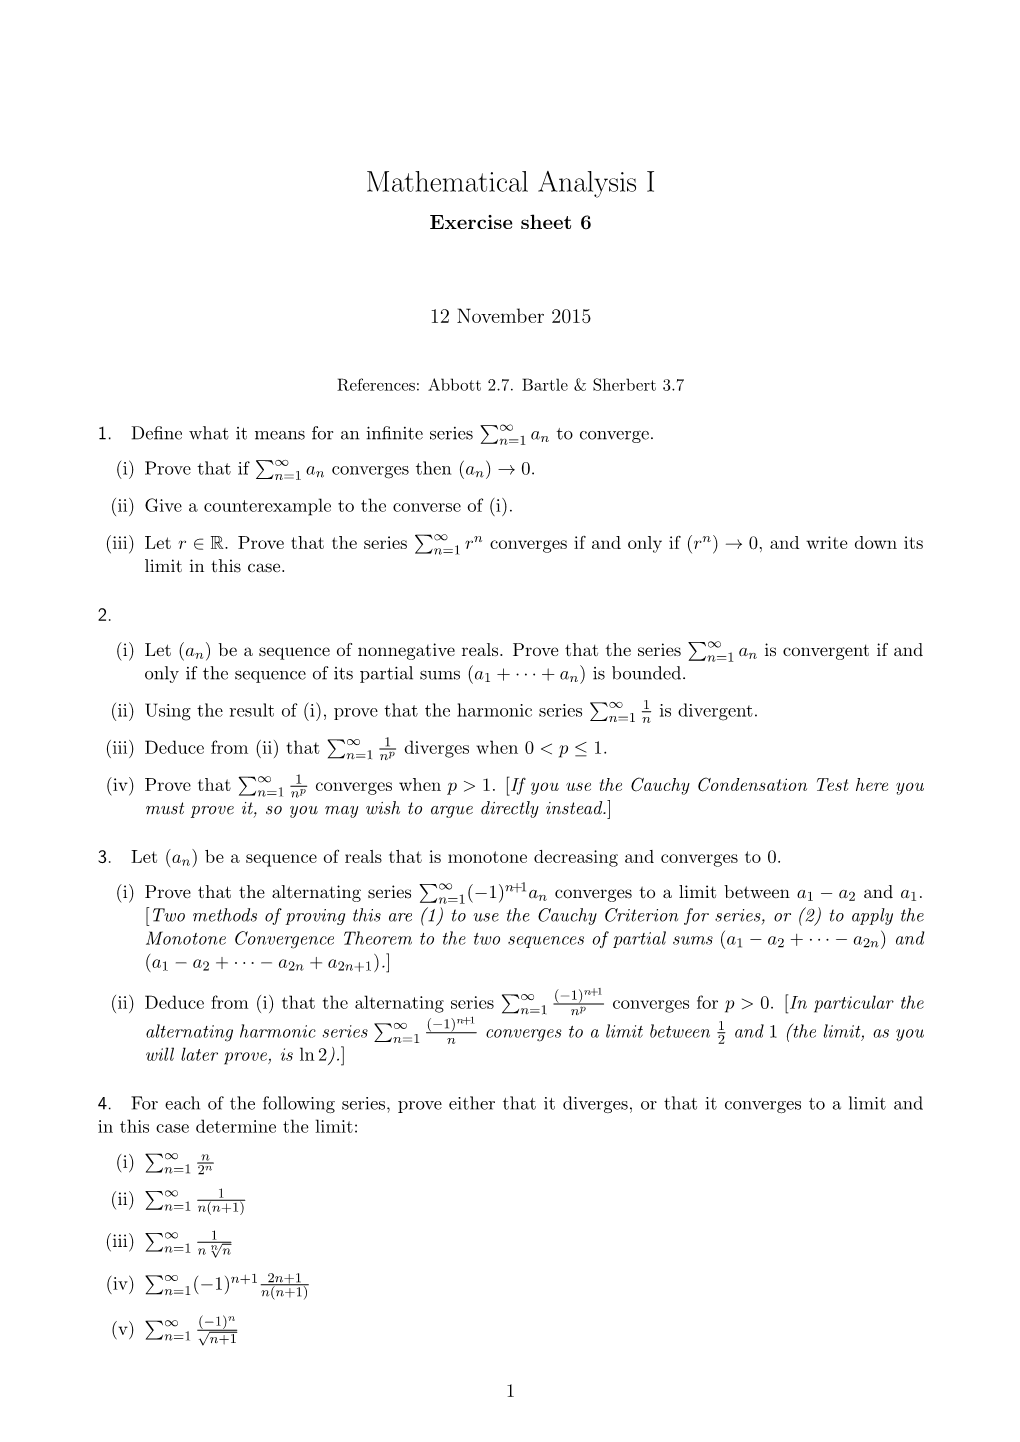 Mathematical Analysis I Exercise Sheet 6